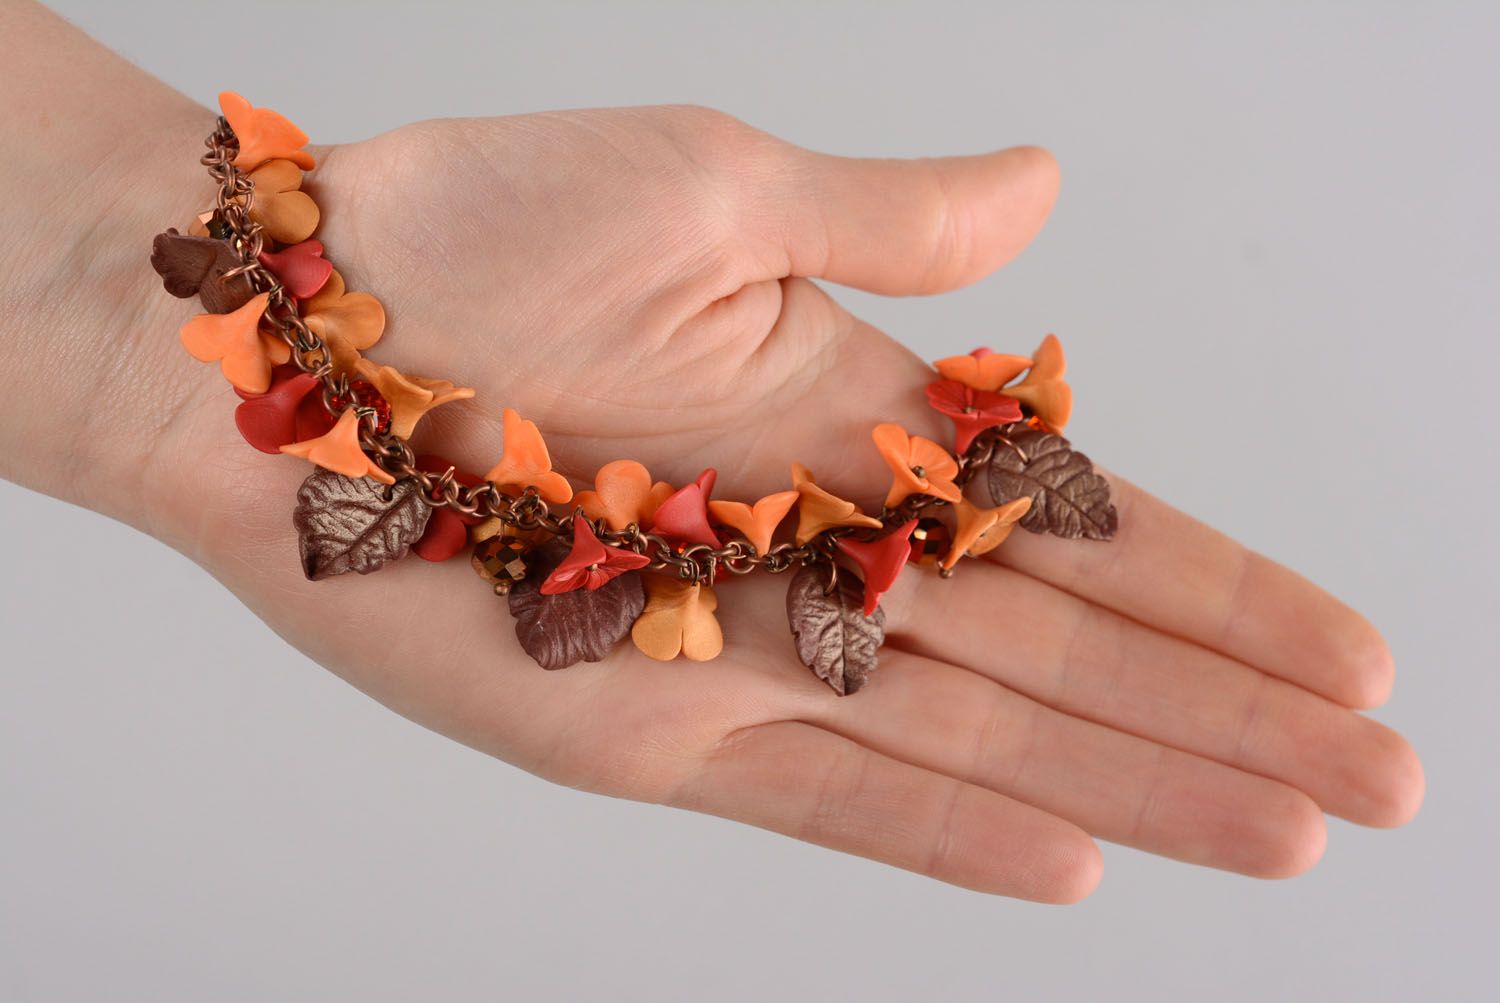 Autumn flowers charm bracelet for girls photo 7